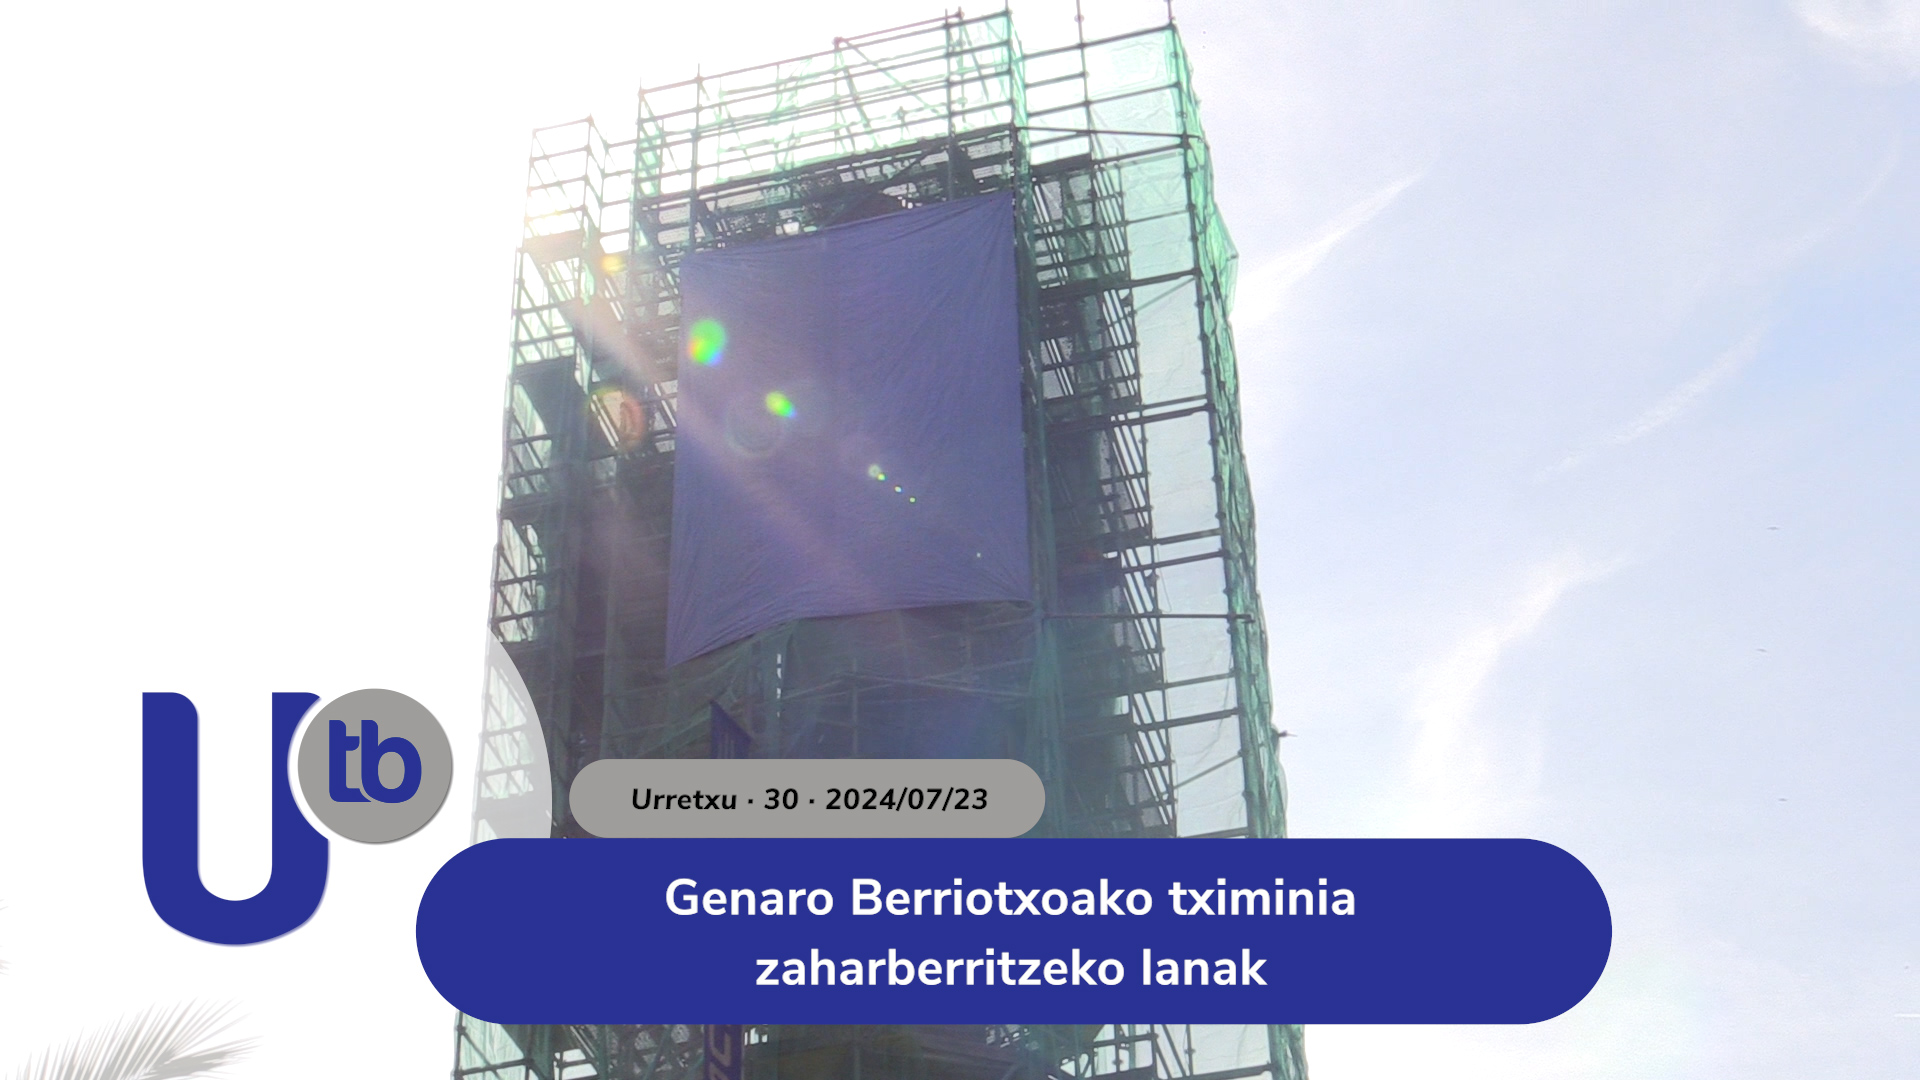 Obras de restauración de la chimenea de Genaro Berriotxoa / Genaro Berriotxoako tximinia zaharberritzeko lanak